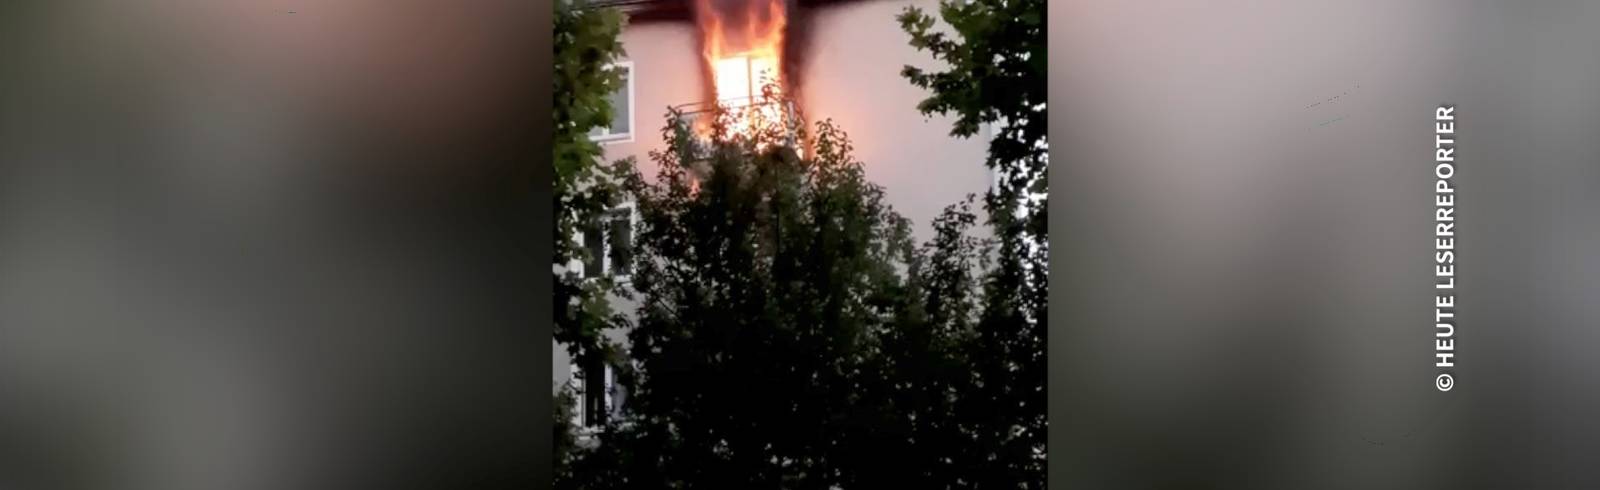 Bezirksflash: Frau springt aus brennender Wohnung im fünften Stock